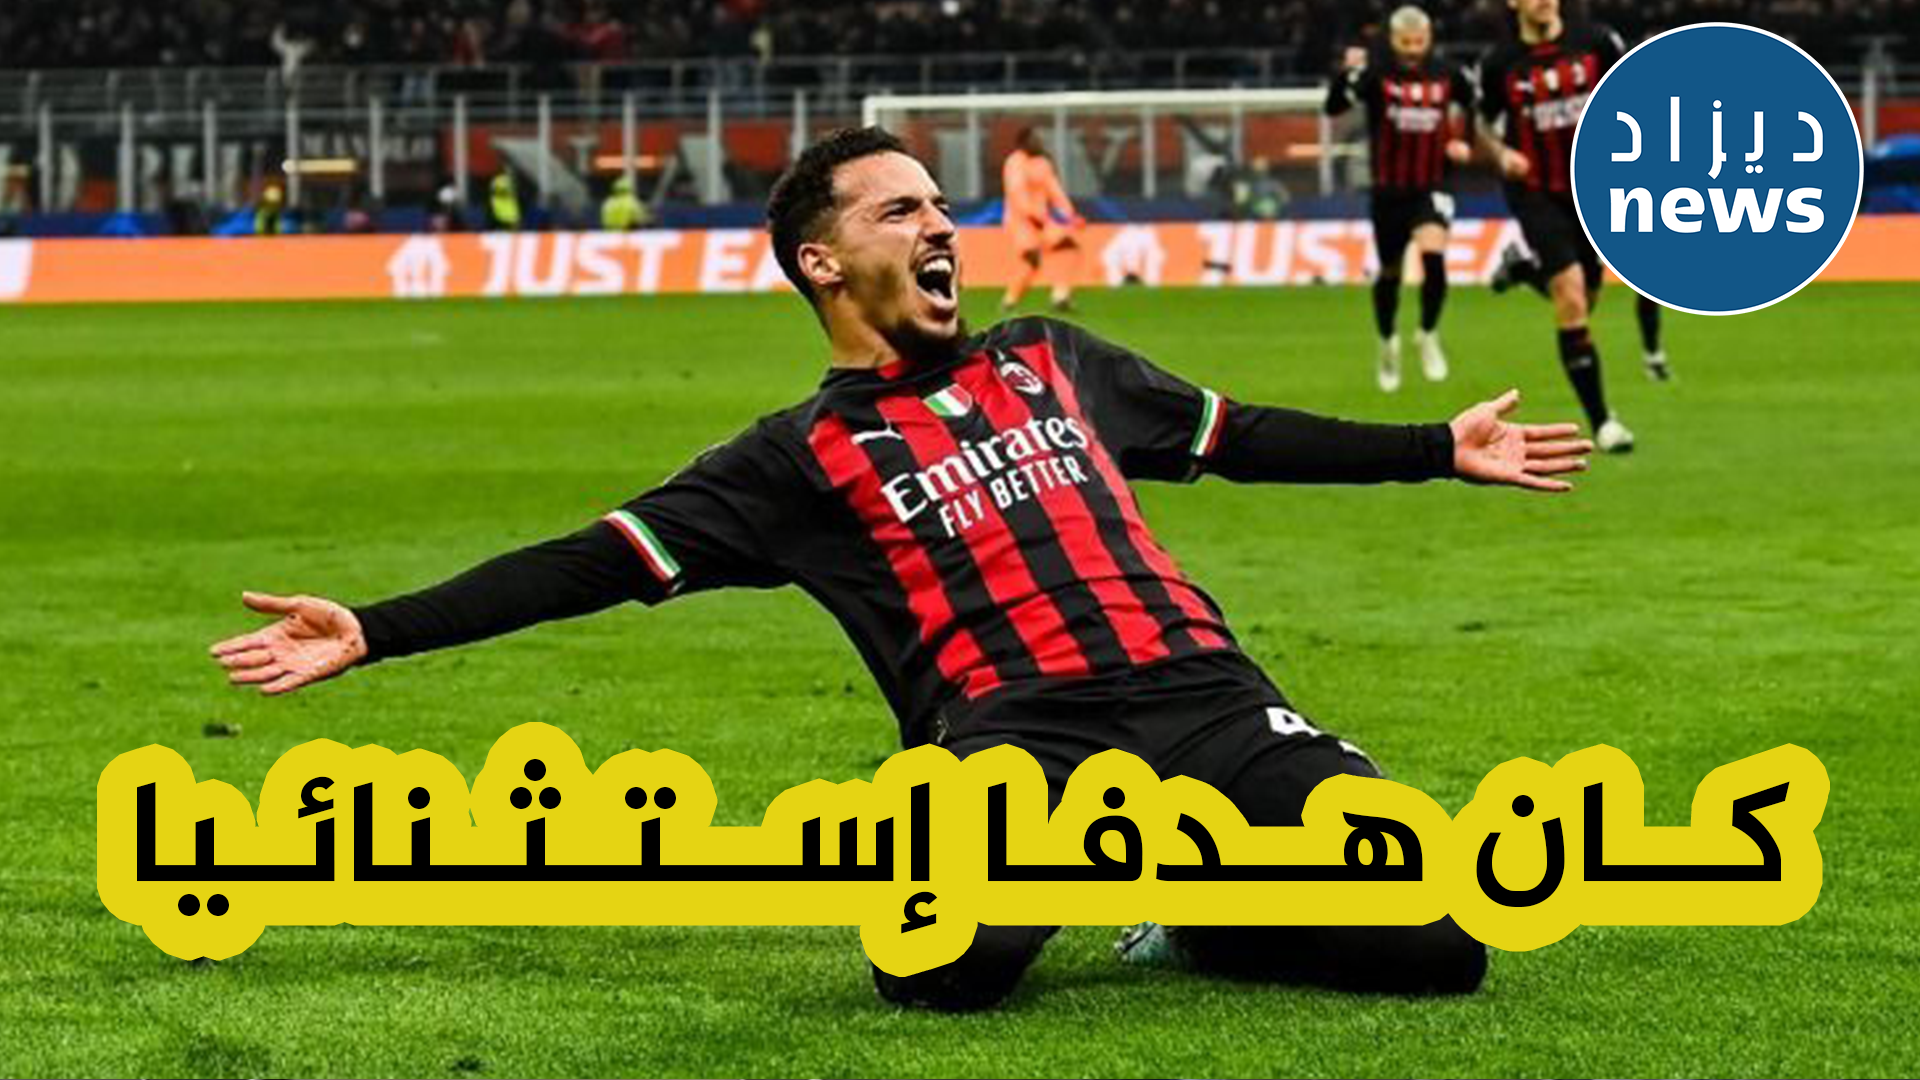 المايسترو إسماعيل بن ناصر يعلق على هدفه الأول الذي سجله في رابطة الأبطال